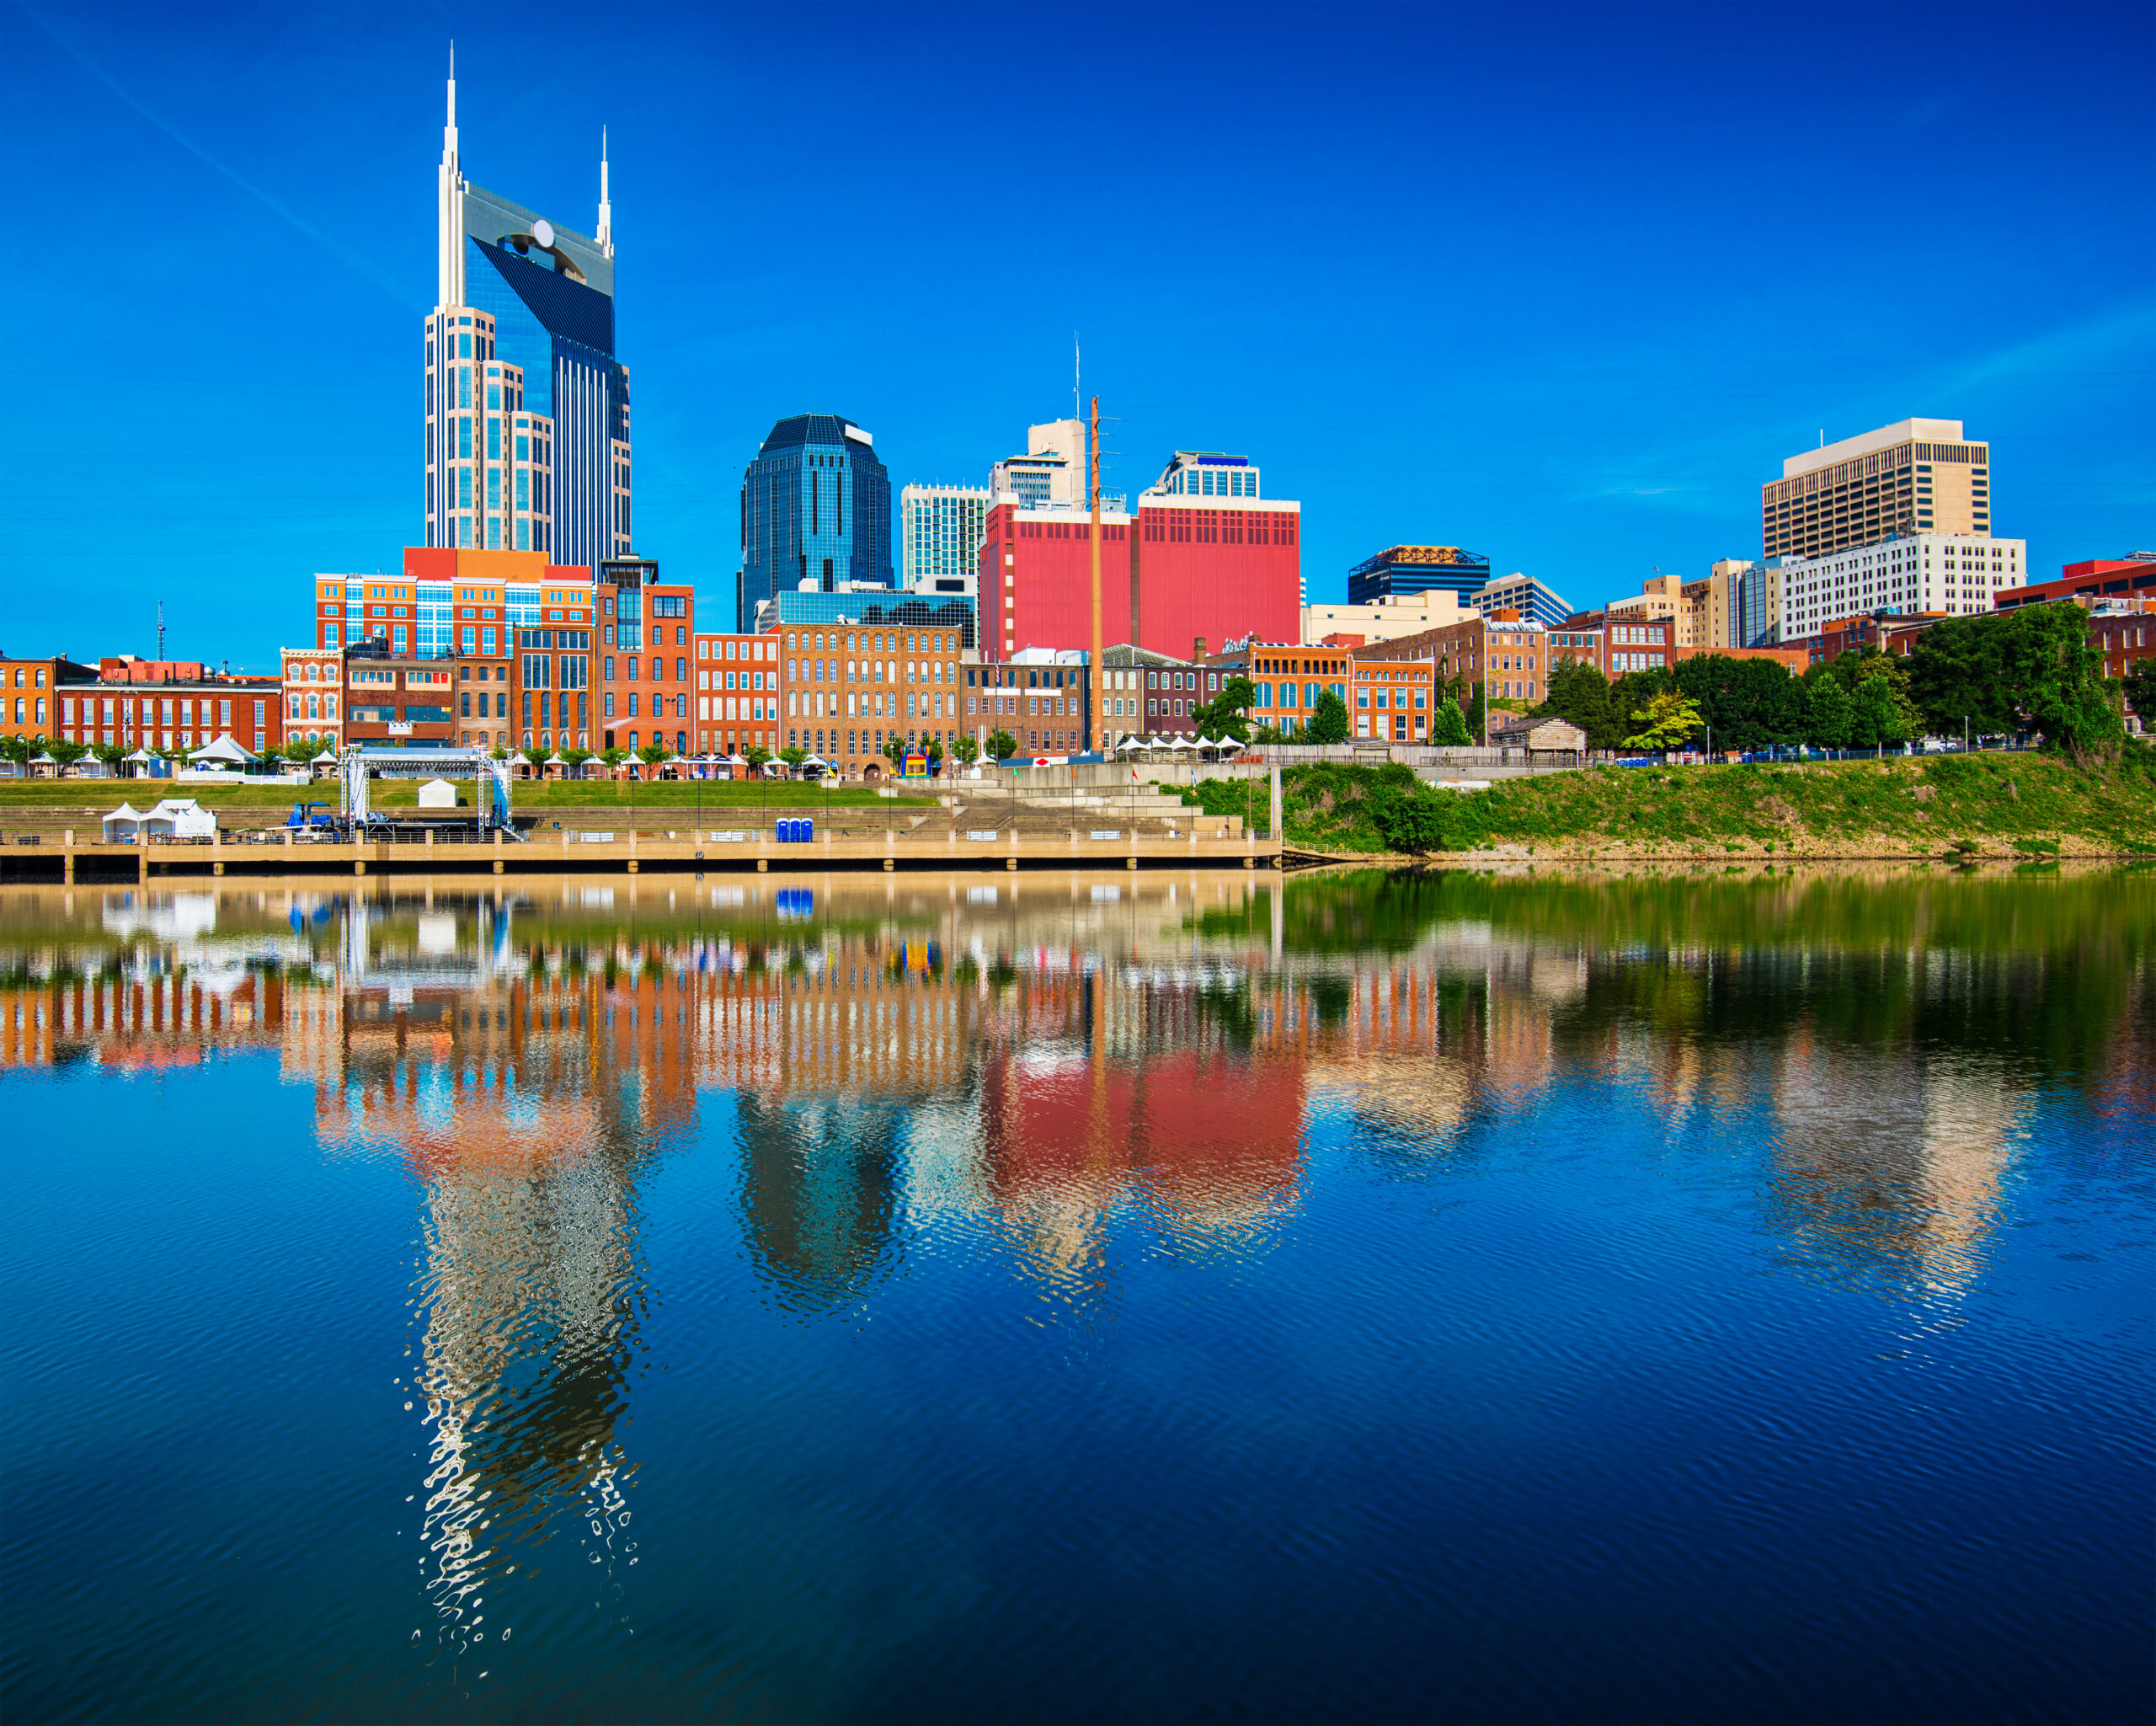 3. Nashville, Tennessee